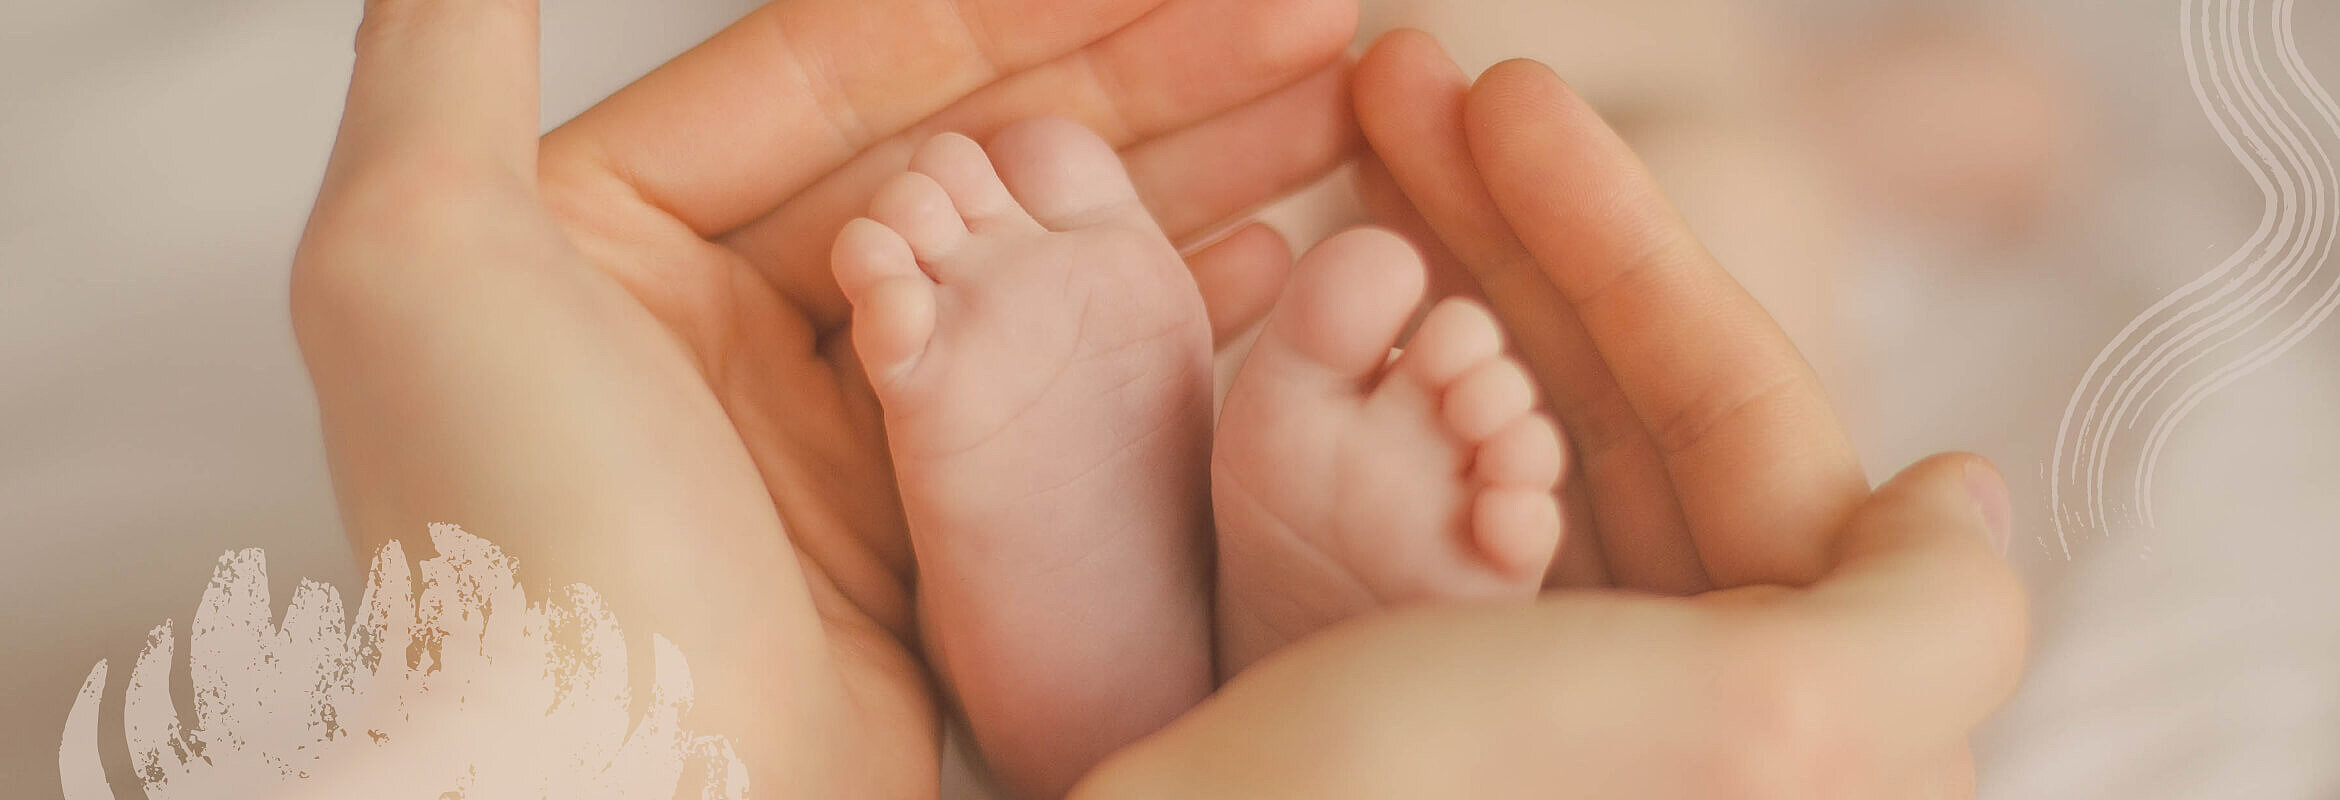 Erwachsene Hände umfassen die winzigen Füße eines Neugeborenen